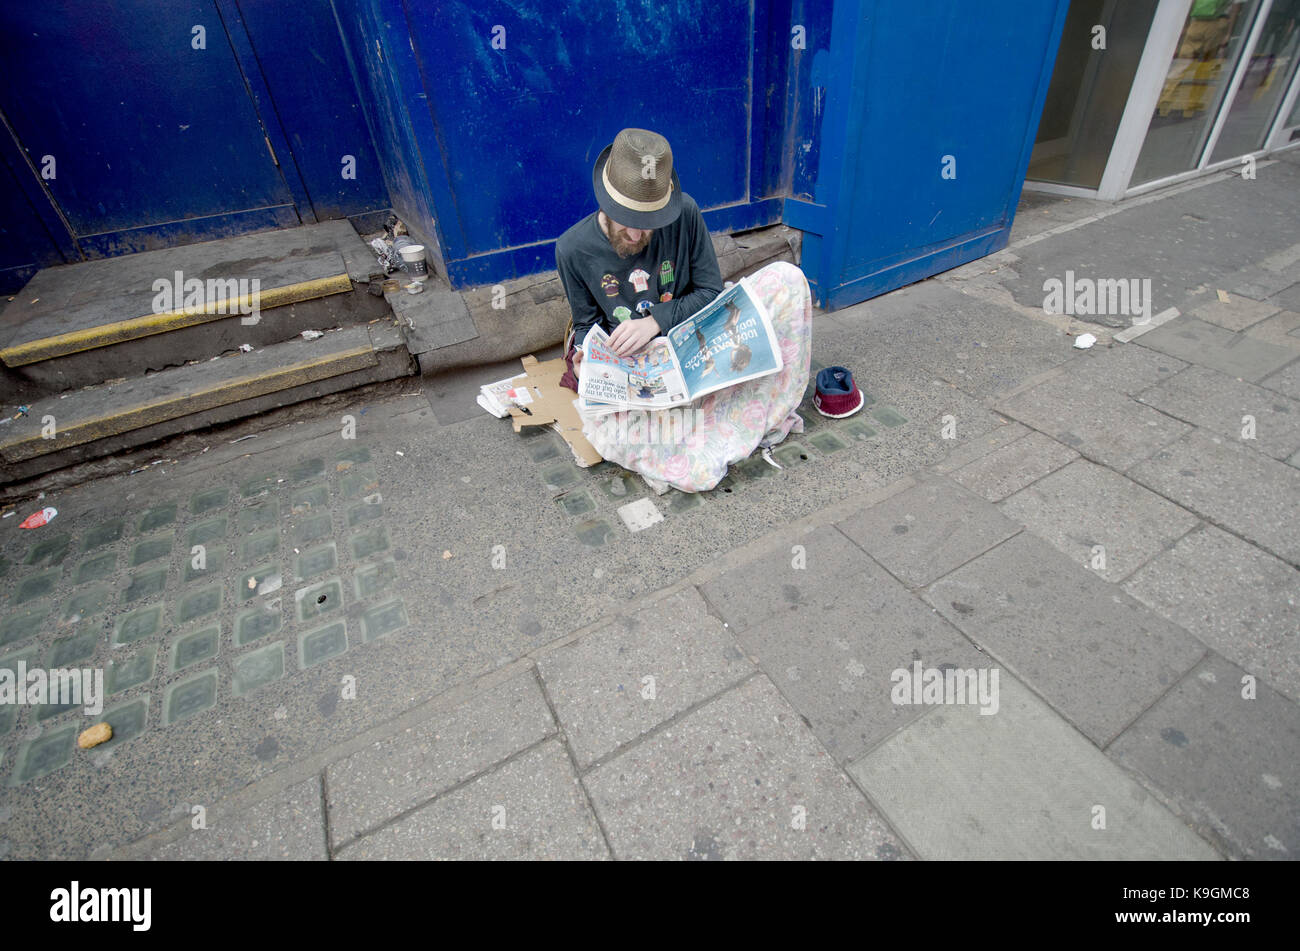 London, England, UK. Obdachlosen eine Zeitung lesen Stockfoto